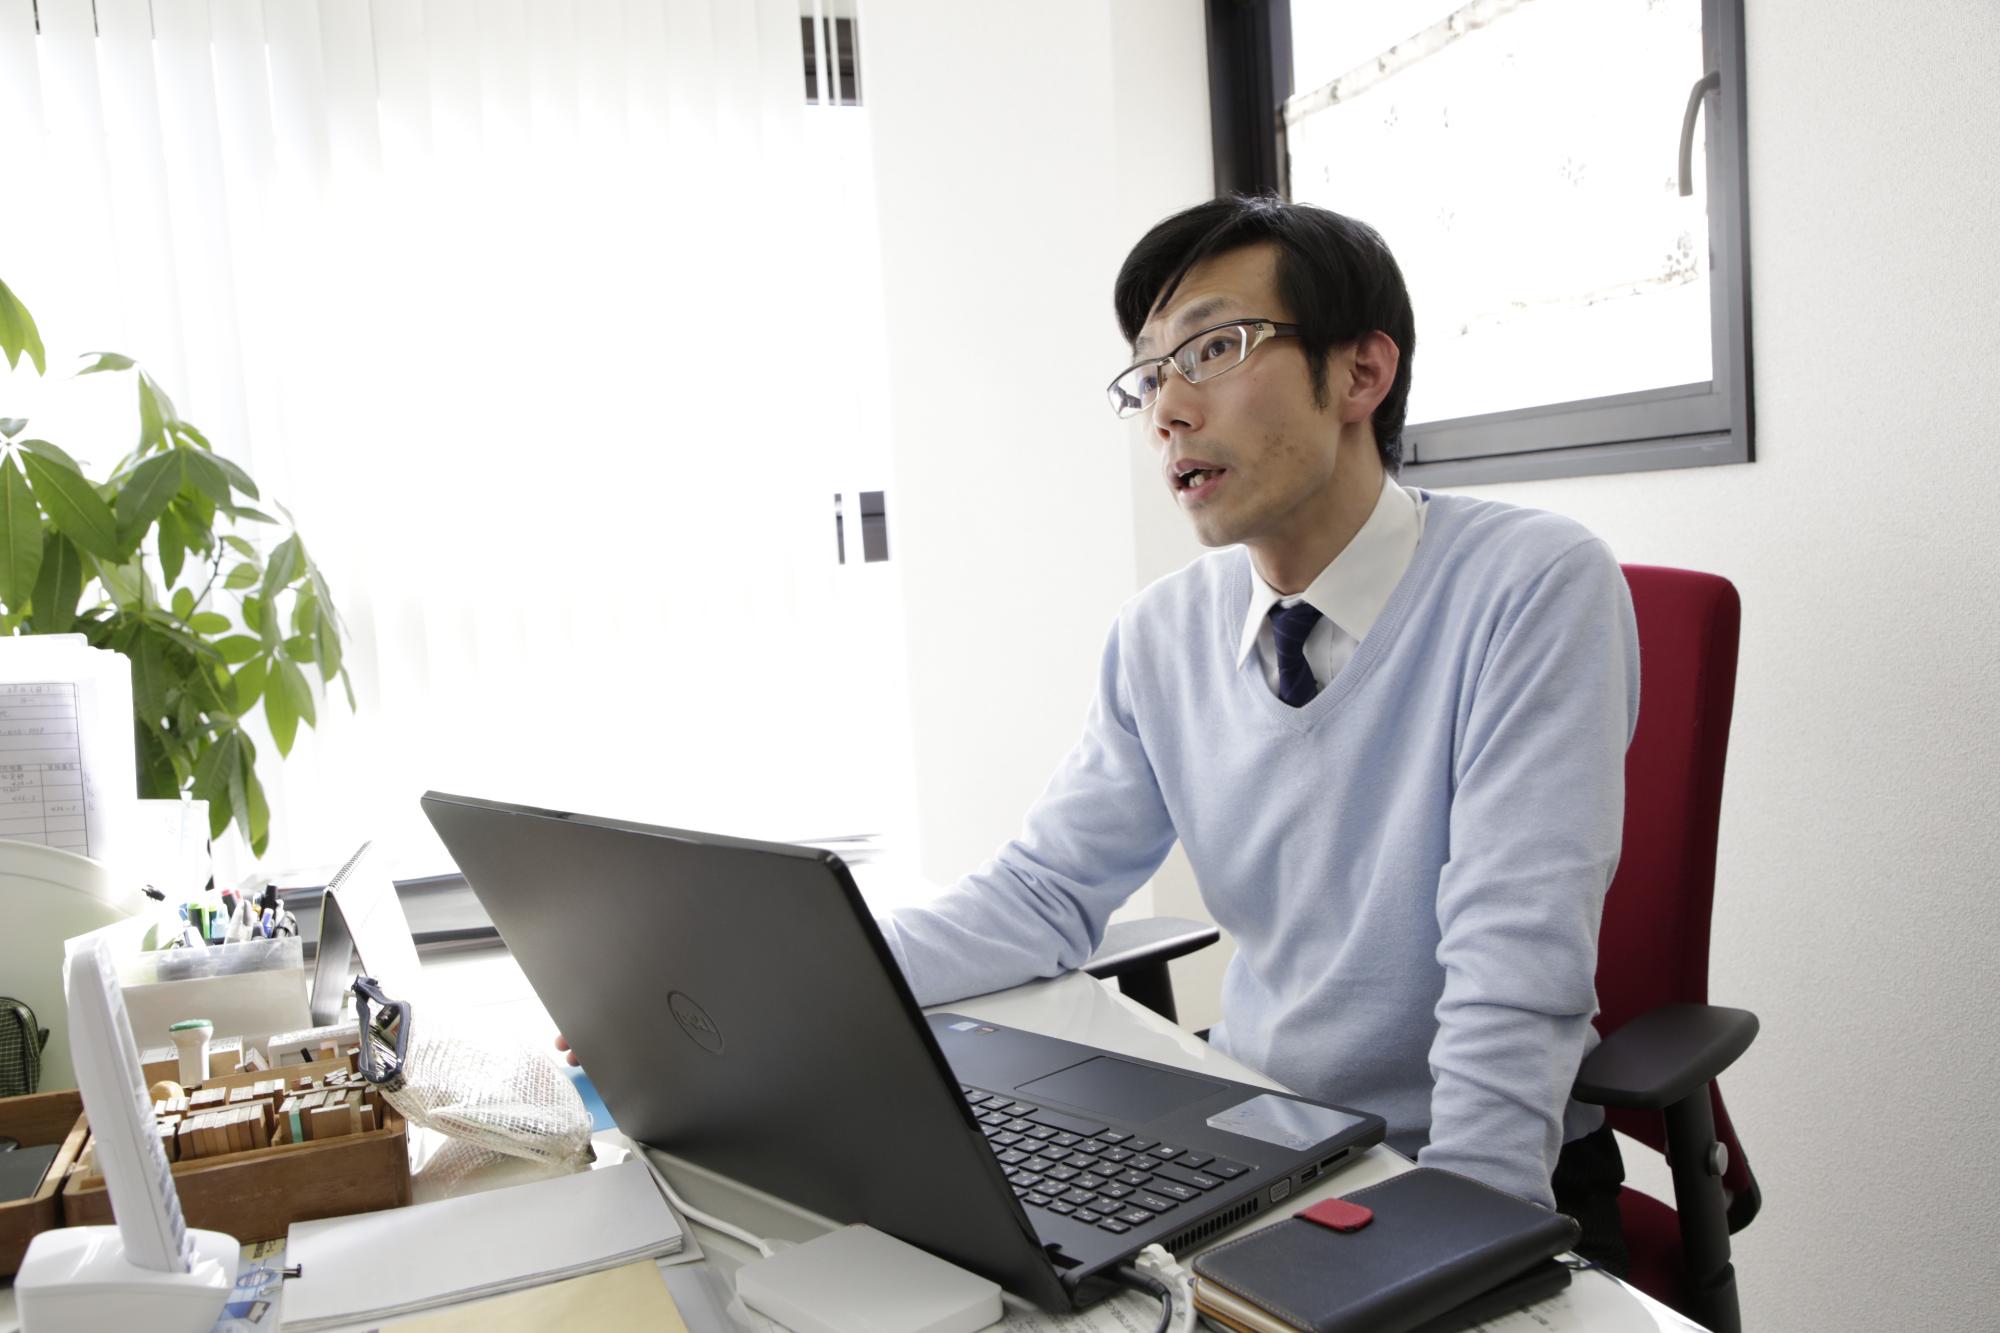 事務所のデスクで仕事をしている平井さんの様子を写した写真。